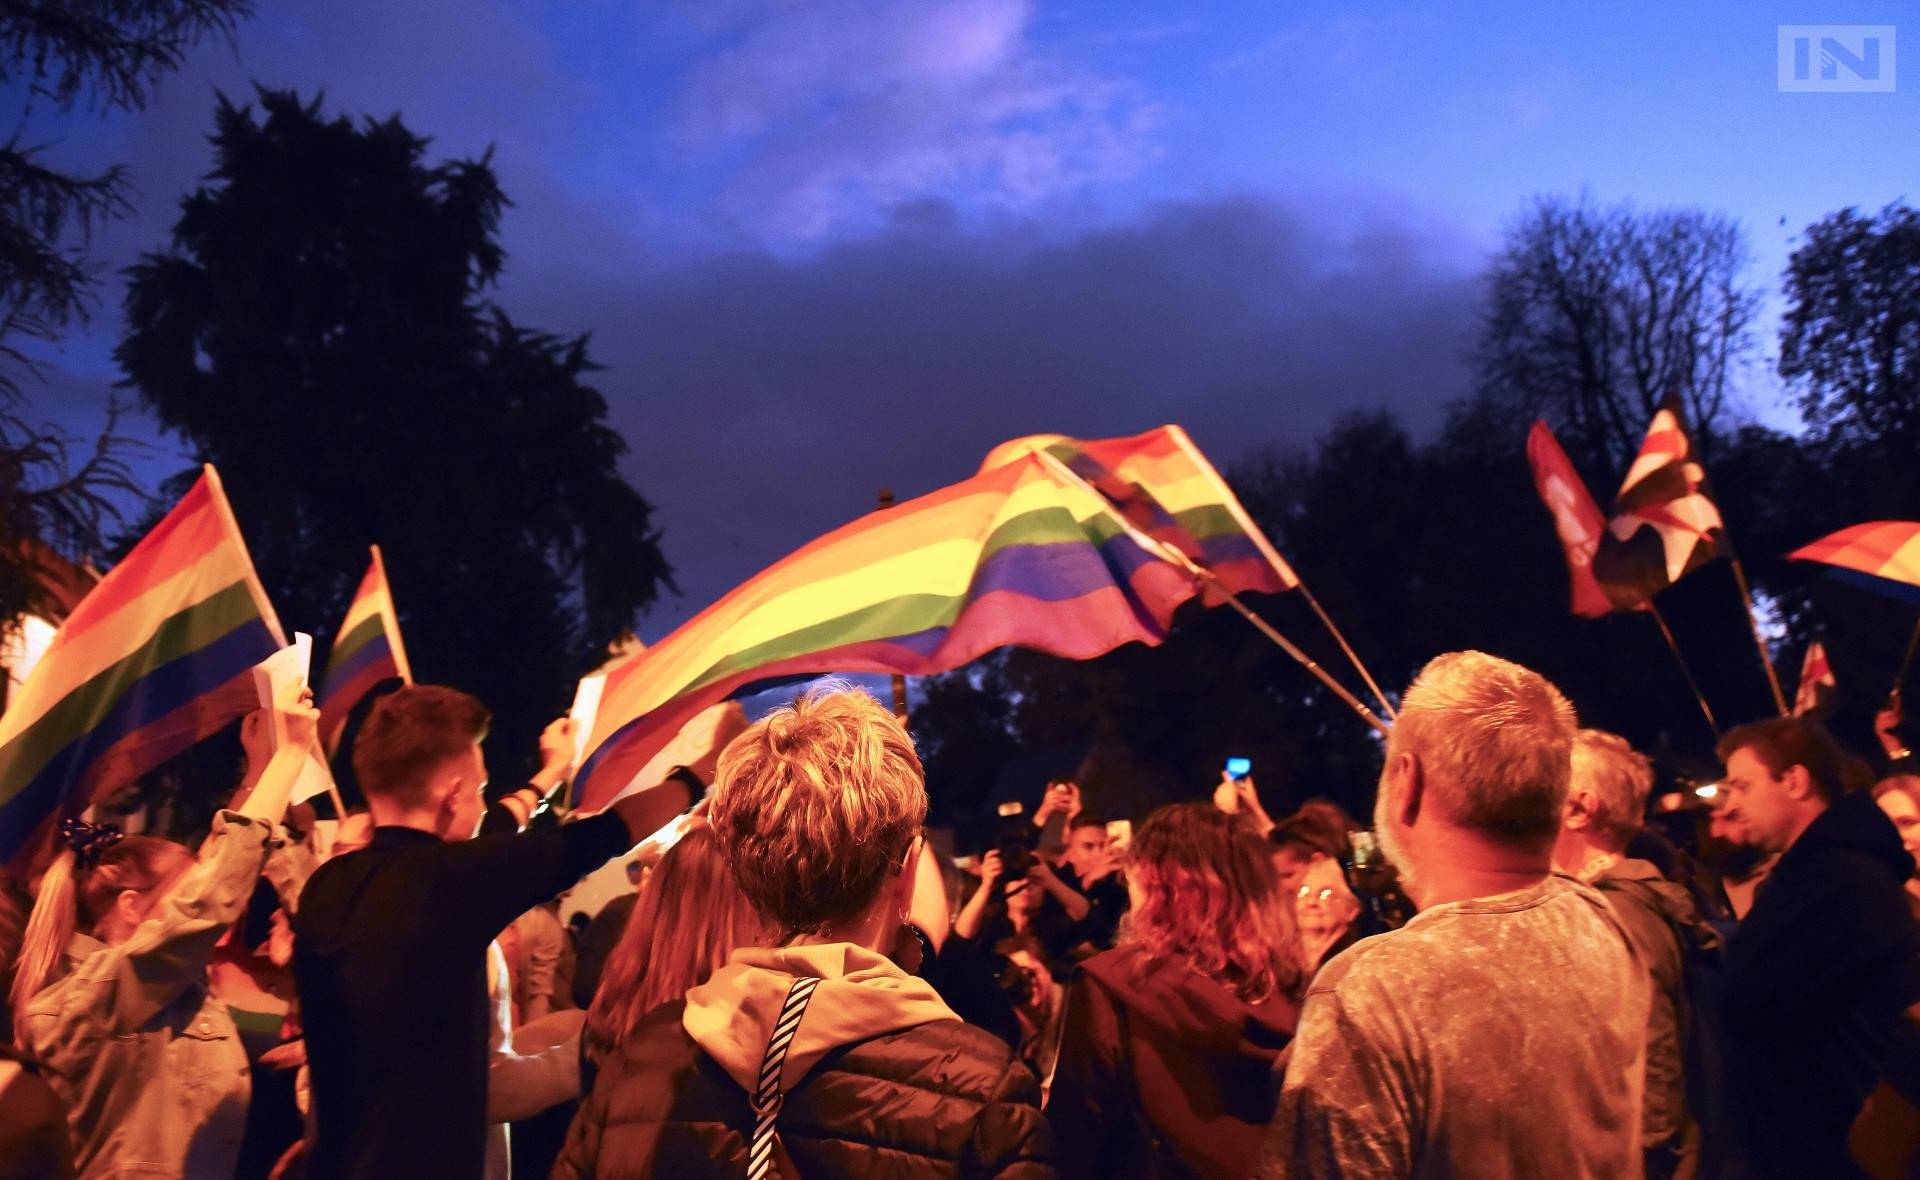 W Krakowie uczniowie LGBT boją się ujawniać swoją orientację seksualną. Wyniki ankiety